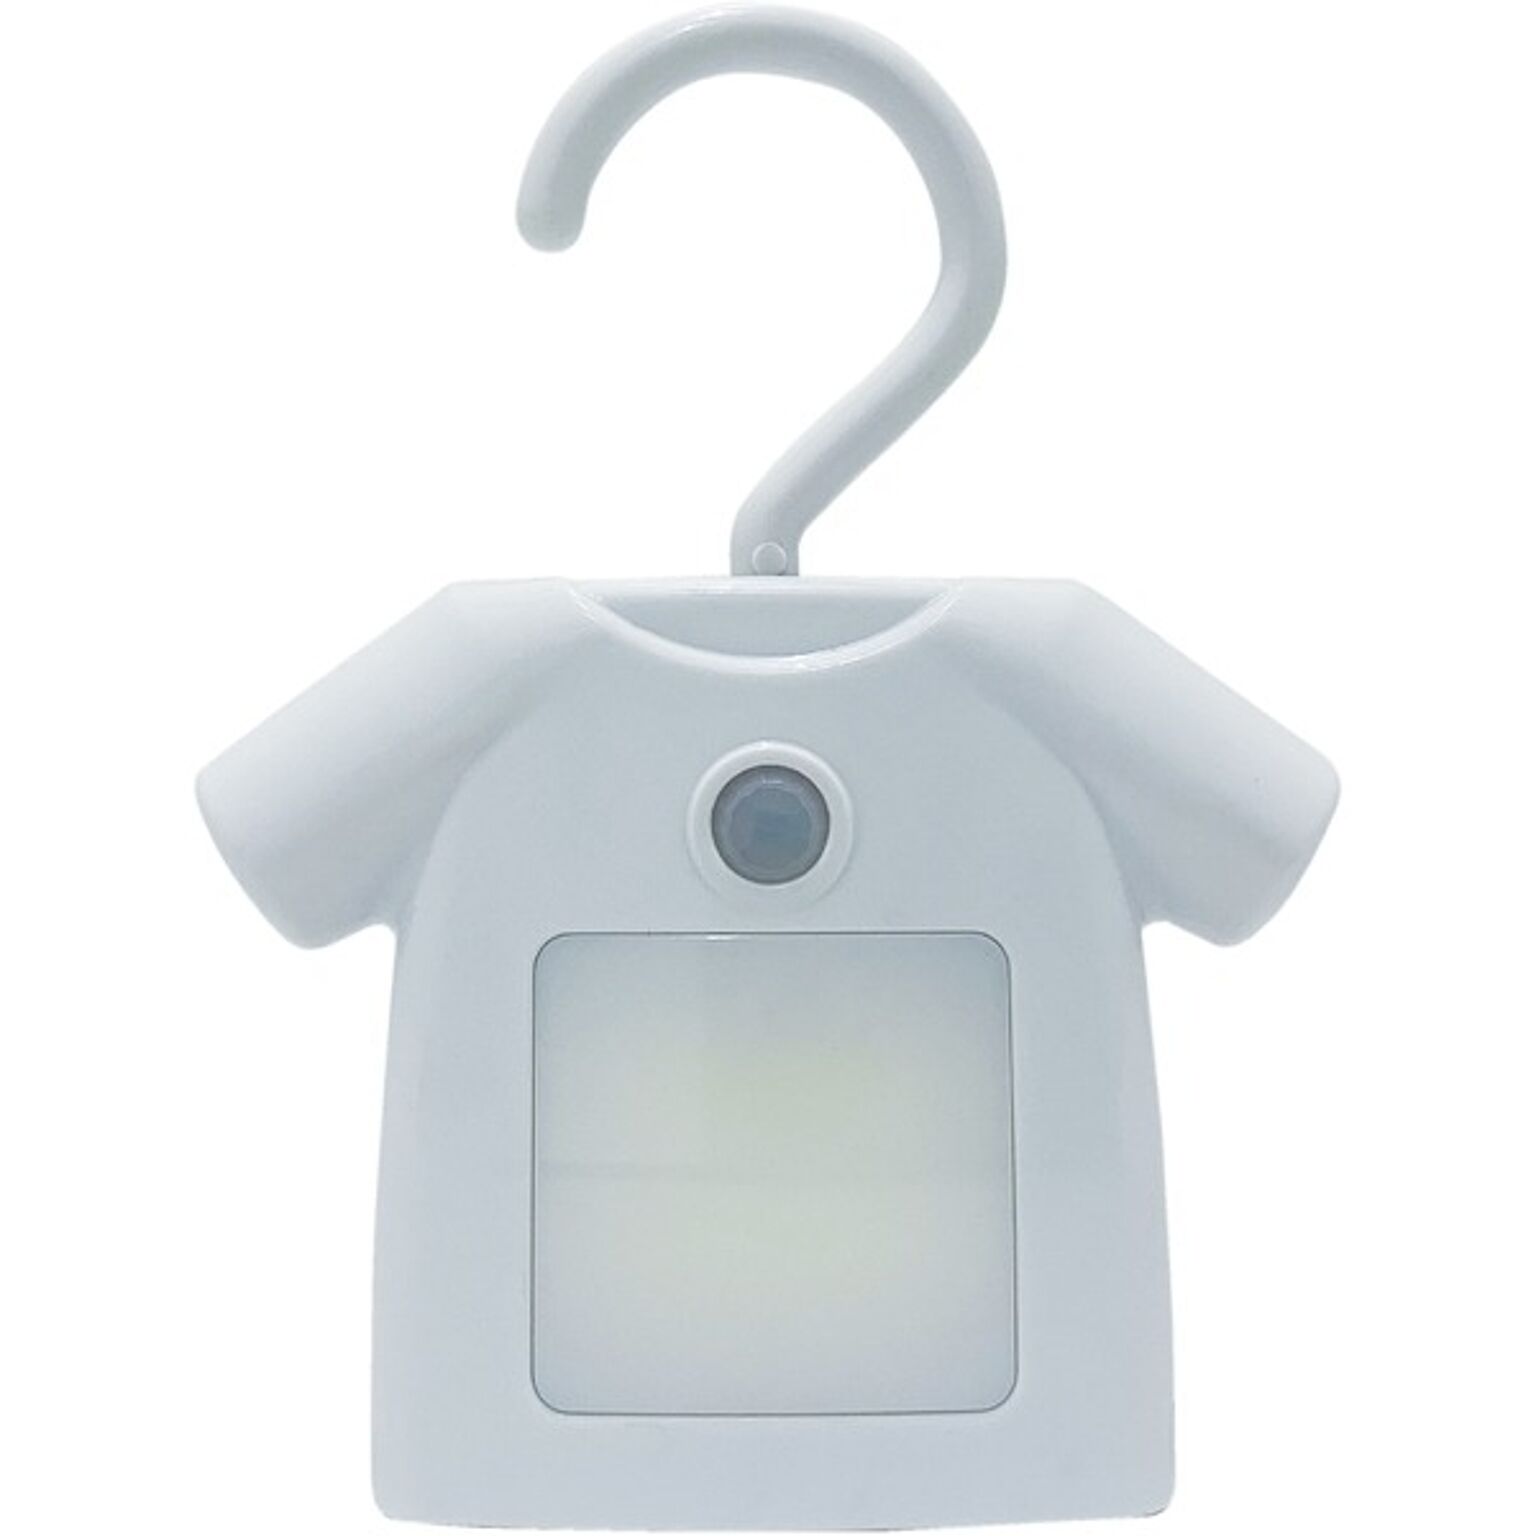 人感センサー付きクローゼットライト T-Shirt ホワイト